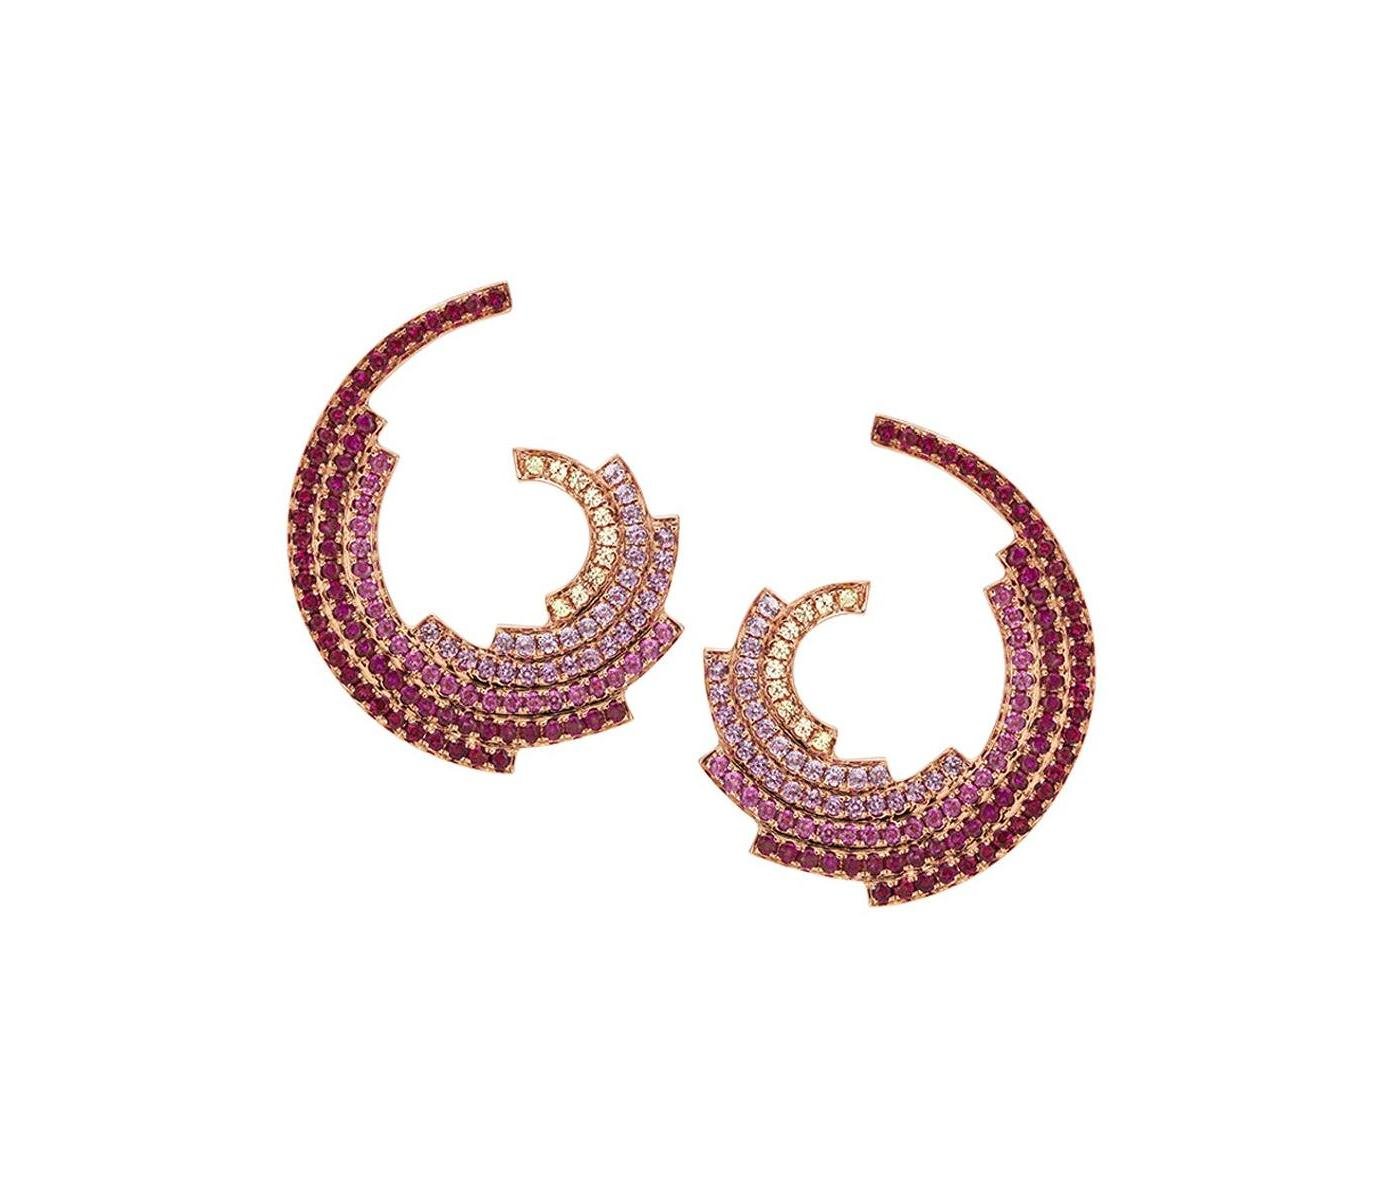 Earrings by Ruifier